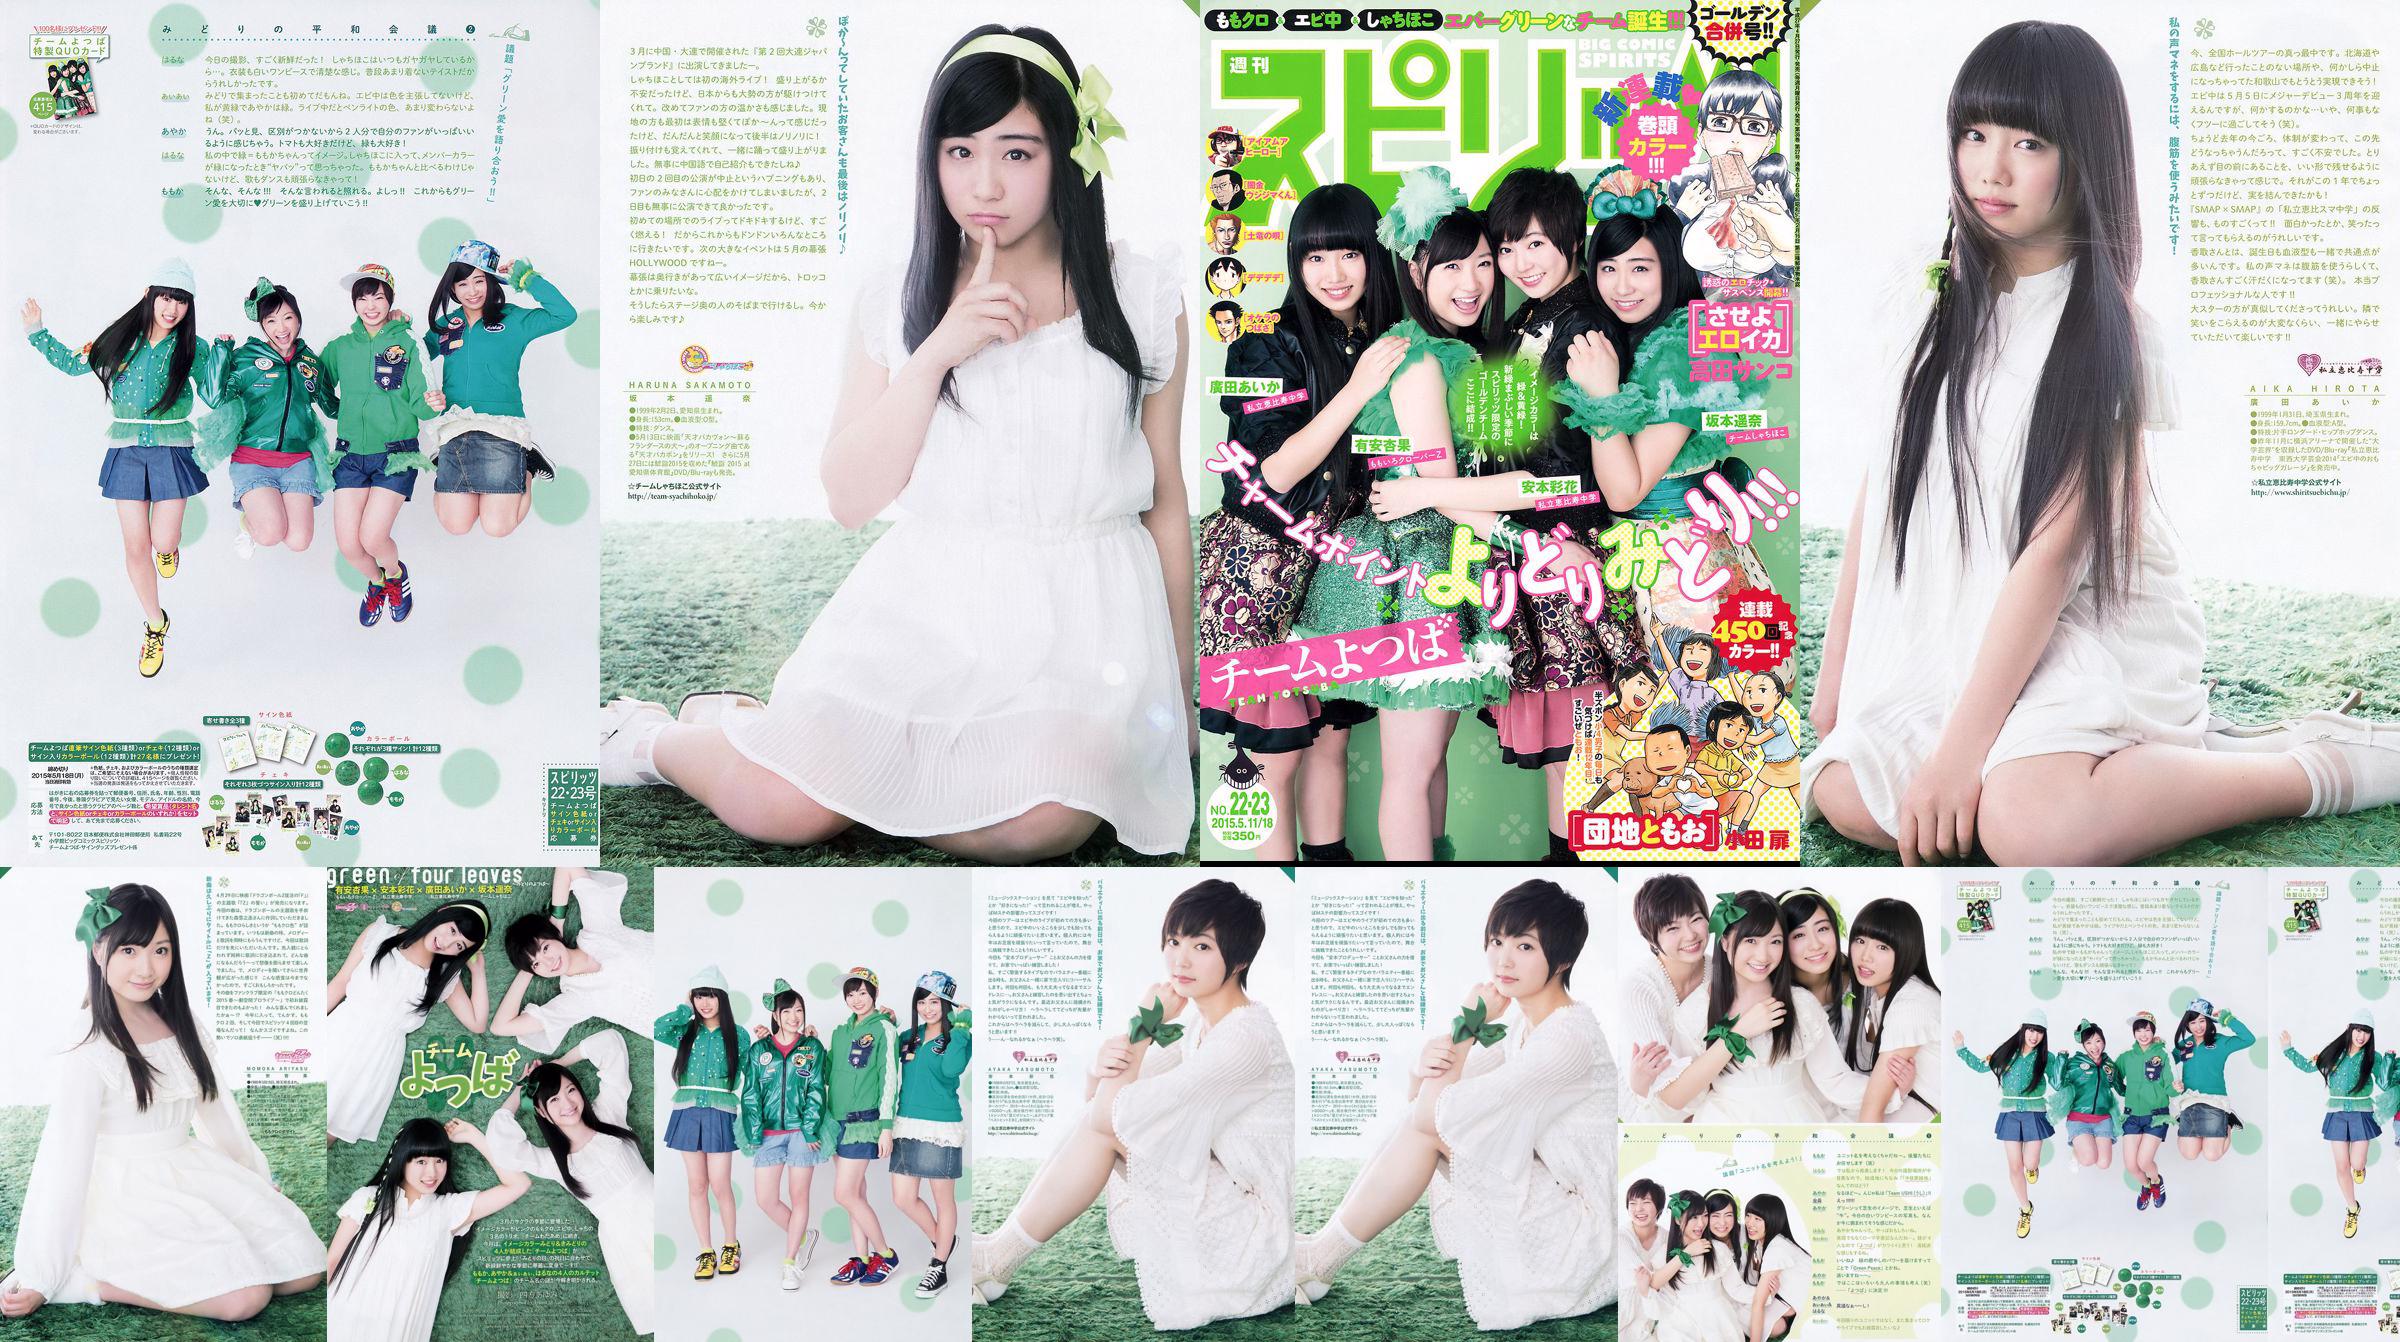 [Weekly Big Comic Spirits] Ayaka Ayana Ayana Sakamoto Haruna Hirota 2015 No.22-23 Photo Magazine No.e0414c Pagina 1